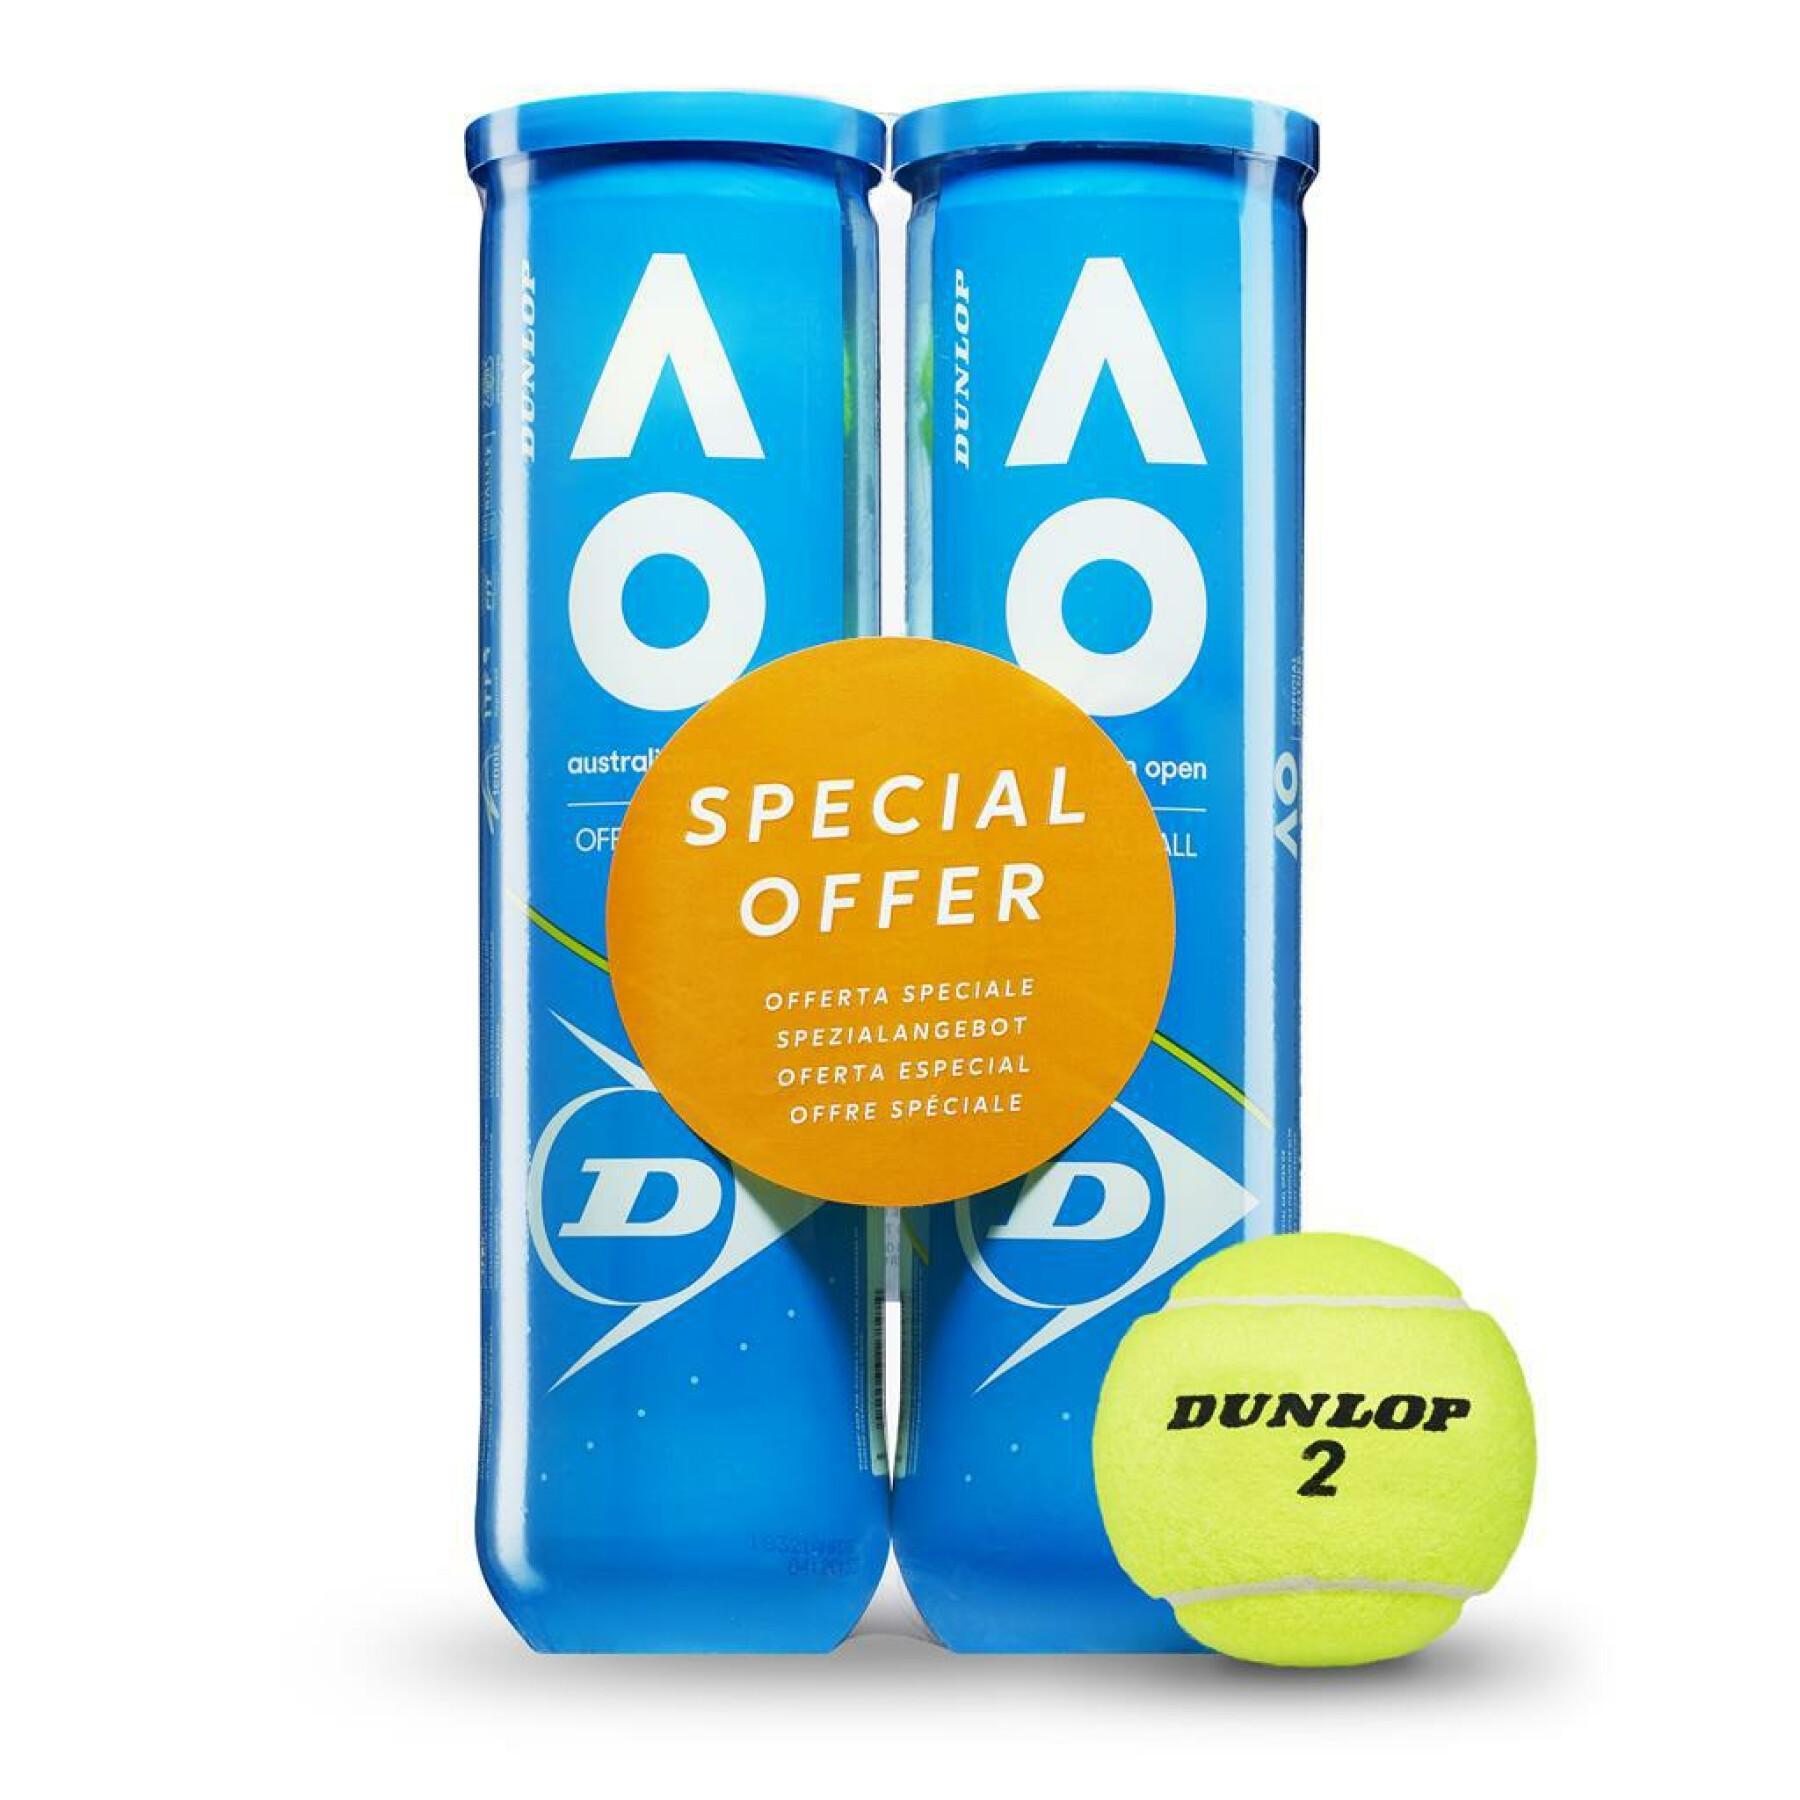 Zestaw 2 tub po 4 piłki tenisowe Dunlop australian open